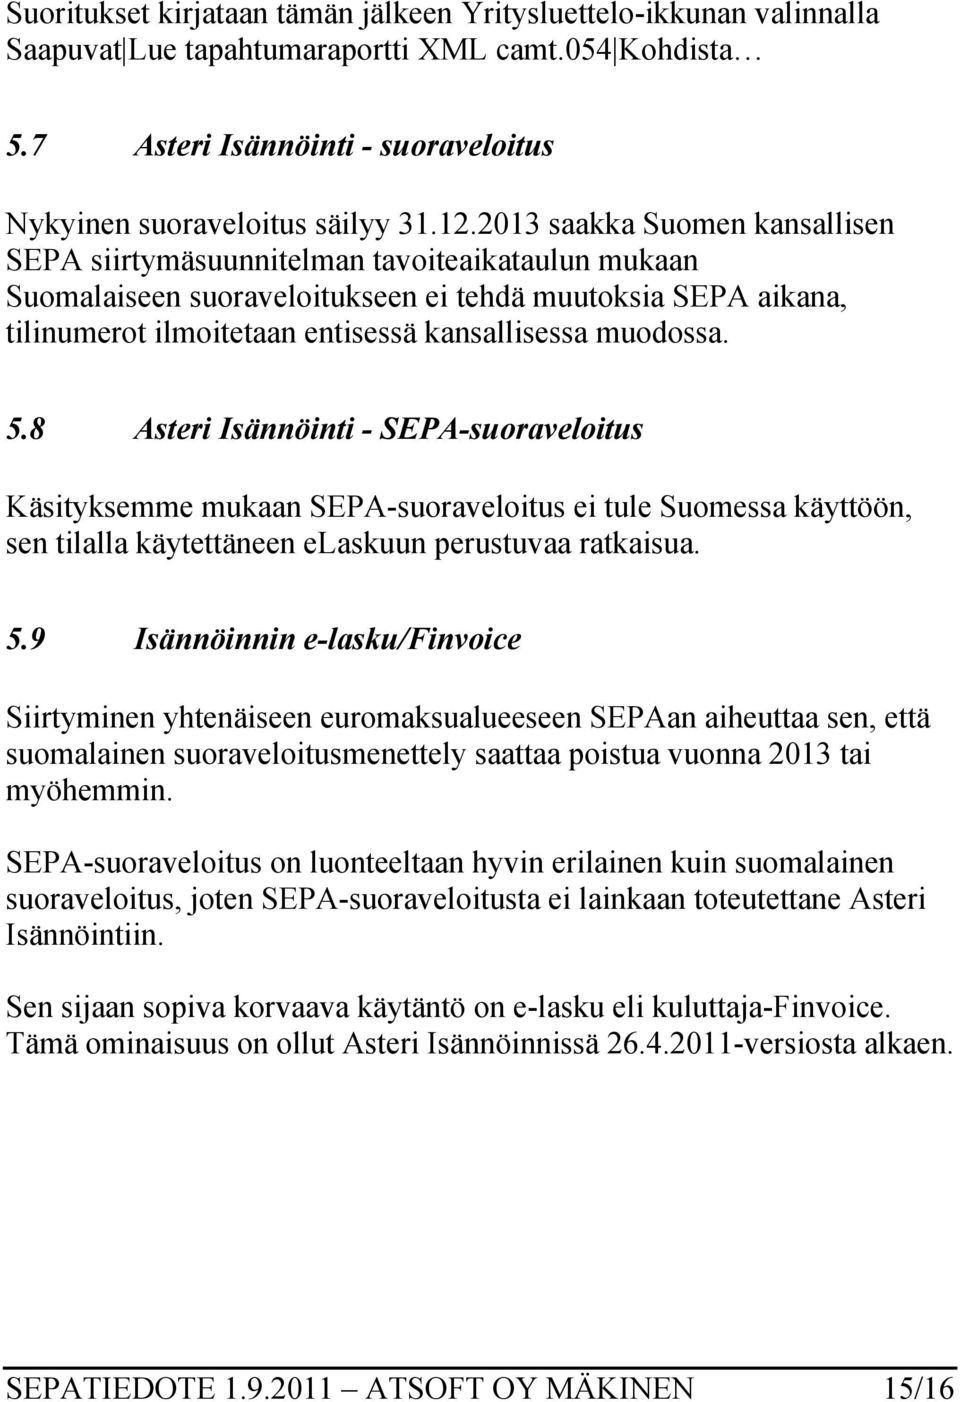 muodossa. 5.8 Asteri Isännöinti - SEPA-suoraveloitus Käsityksemme mukaan SEPA-suoraveloitus ei tule Suomessa käyttöön, sen tilalla käytettäneen elaskuun perustuvaa ratkaisua. 5.9 Isännöinnin e-lasku/finvoice Siirtyminen yhtenäiseen euromaksualueeseen SEPAan aiheuttaa sen, että suomalainen suoraveloitusmenettely saattaa poistua vuonna 2013 tai myöhemmin.